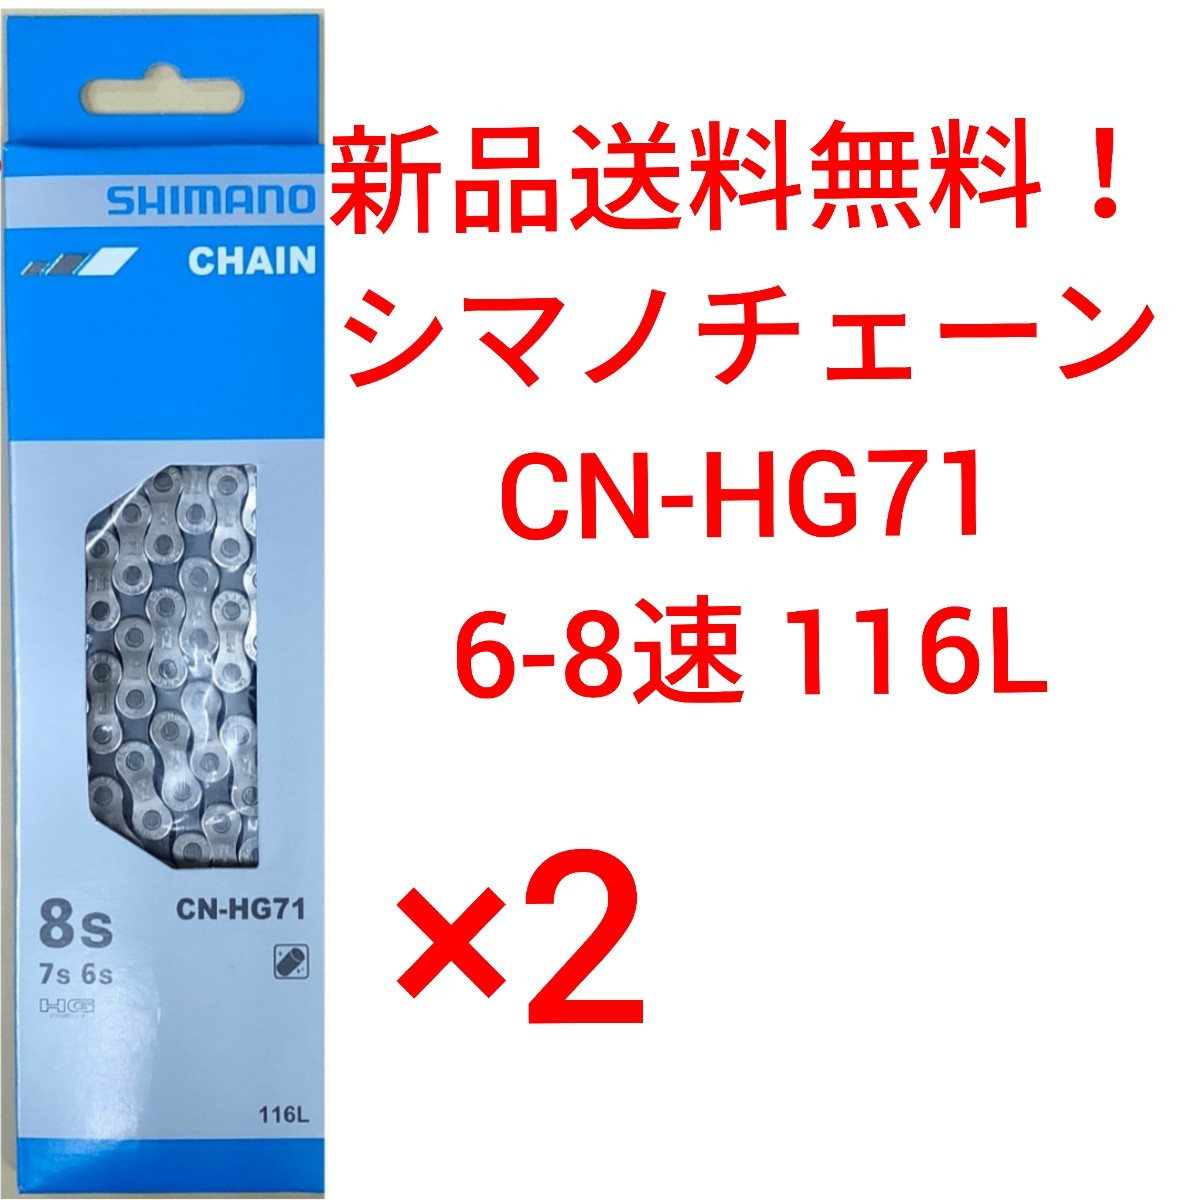 【新品送料無料】 チェーン CN-HG71 2点 シマノ 6-8速 SHIMANO 1161 CNHG71 ICNHG71116I ギア 自転車 ロードバイク 部品 補修 _画像1